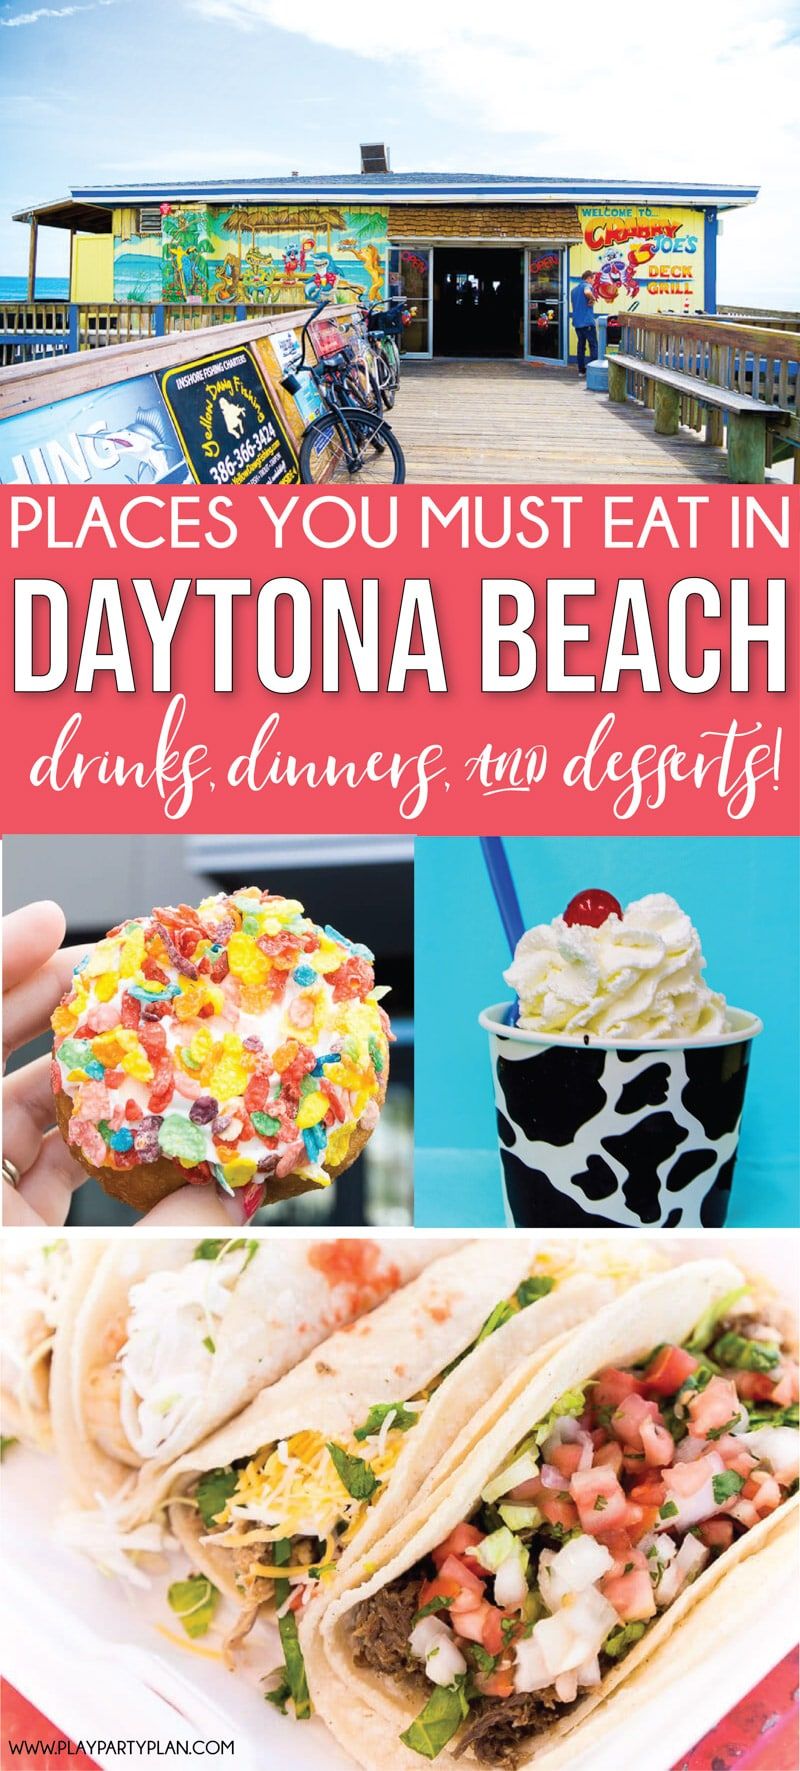 Labākie restorāni Deitonabīčas Floridā! Viss no ēdiena uz laipas līdz pārtikai netālu no pludmales krastiem!